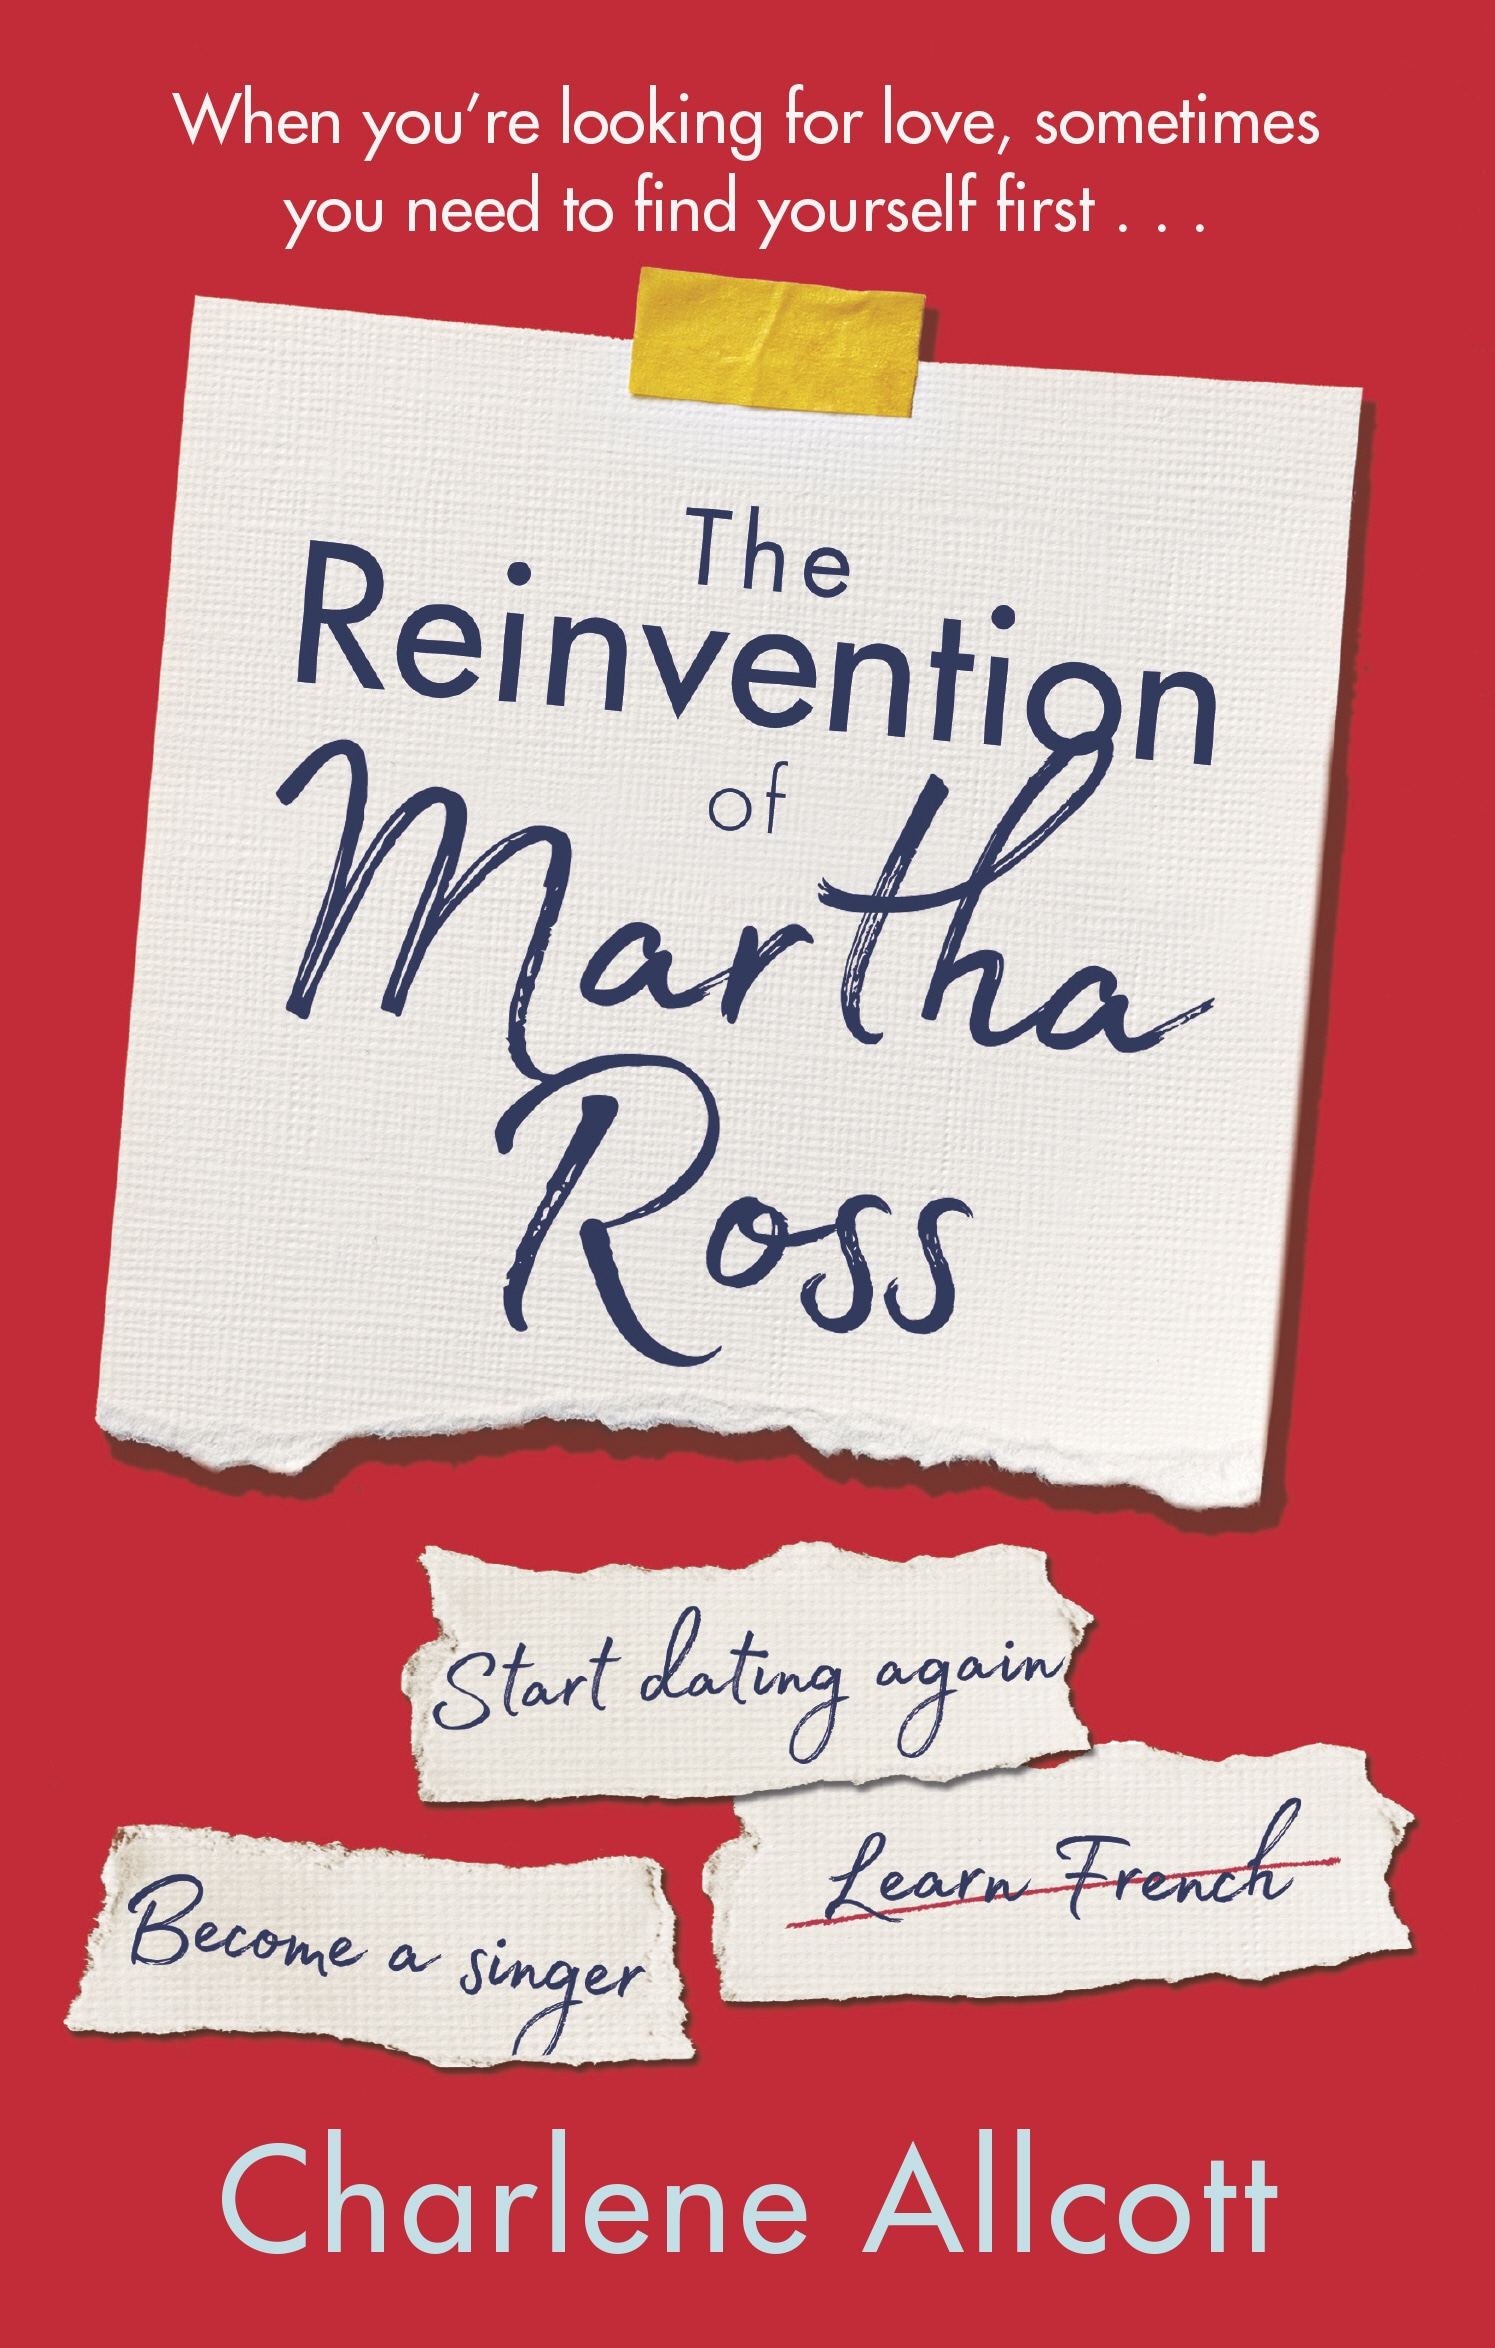 Book “The Reinvention of Martha Ross” by Charlene Allcott — April 18, 2019